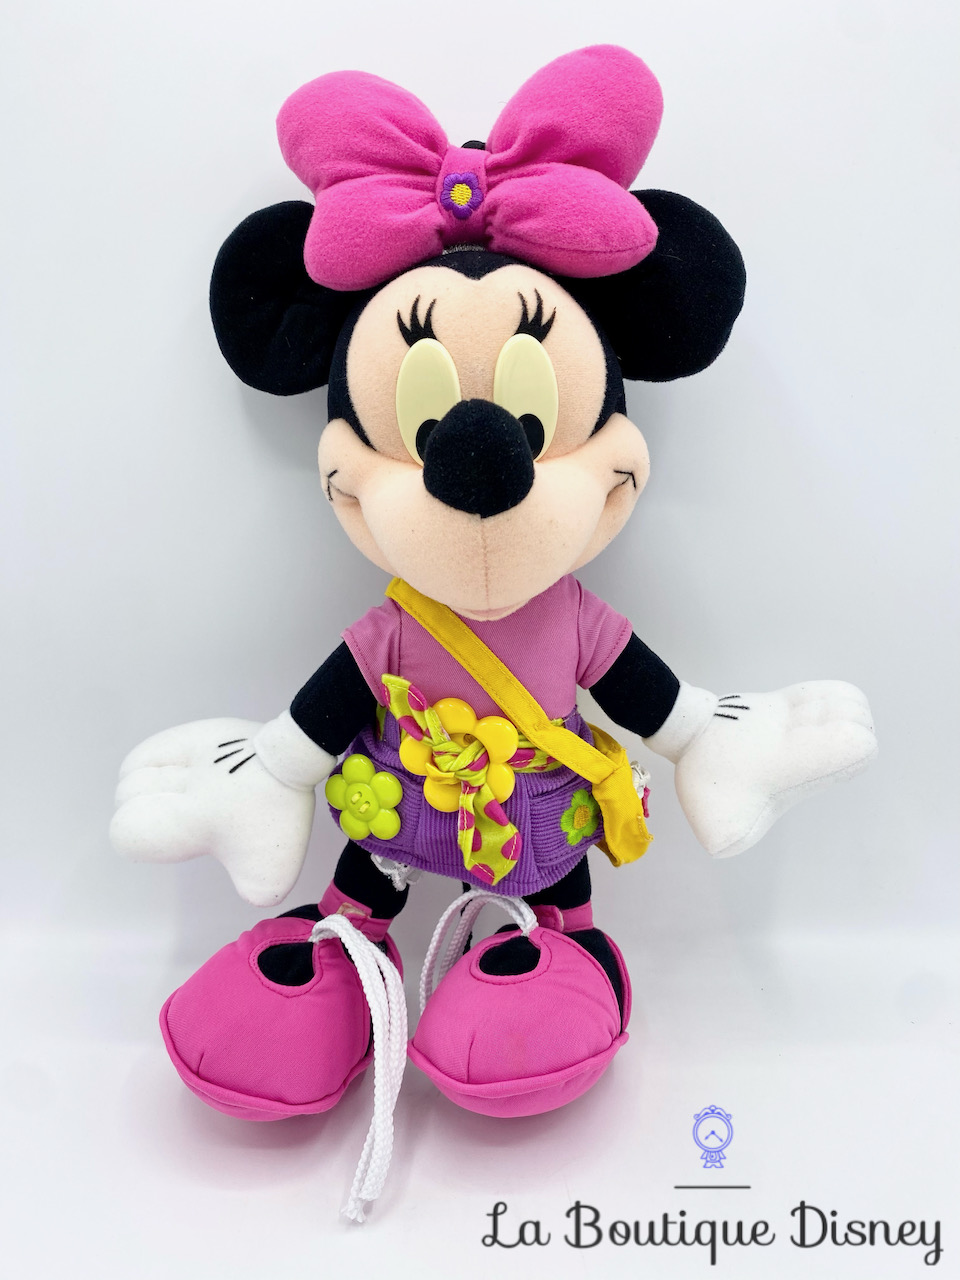 Doudou Disney personnalisé - Minnie à fleurs